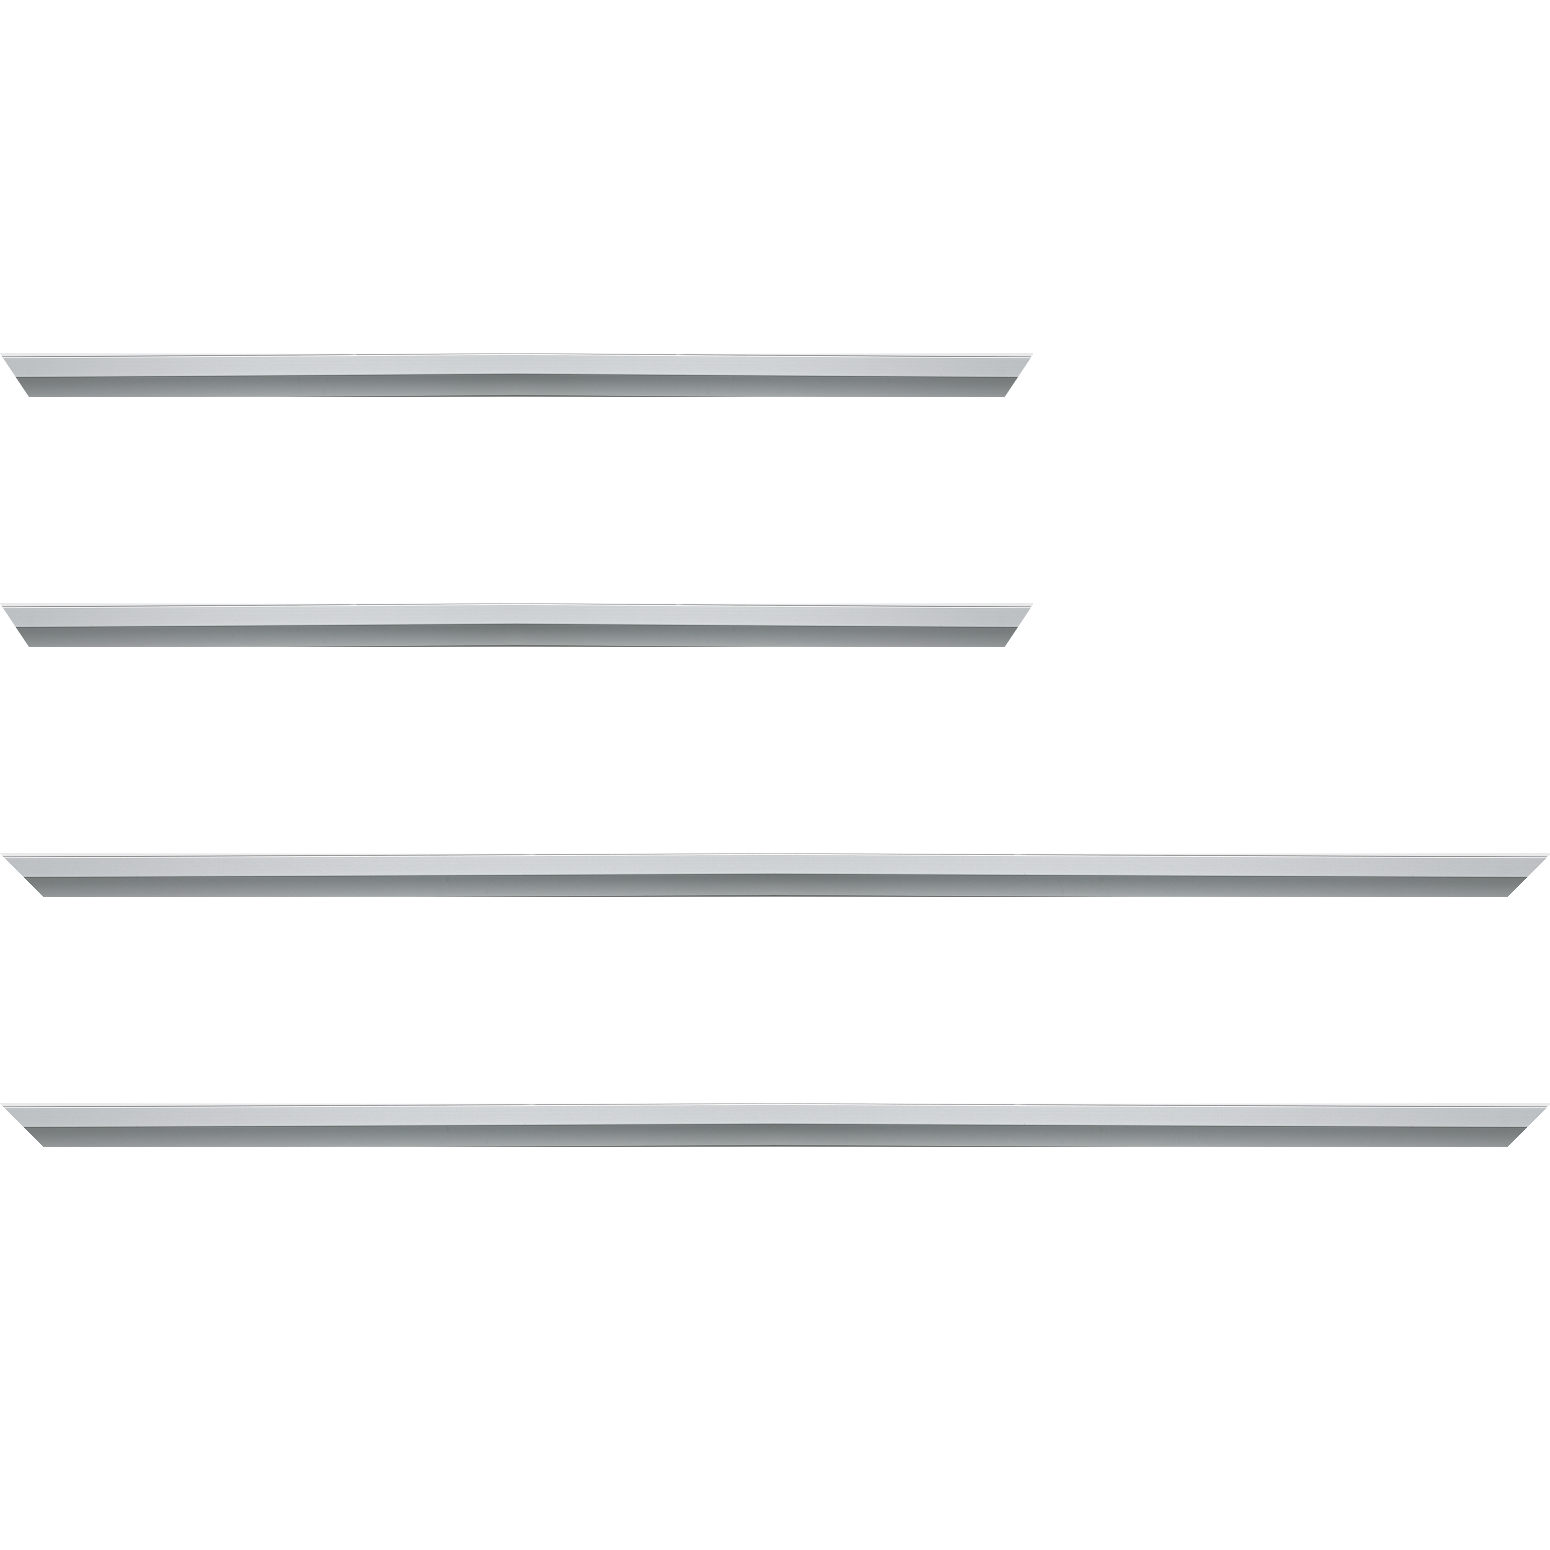 Baguette aluminium profil plat largeur 7mm, couleur argent mat ,(le sujet qui sera glissé dans le cadre sera en retrait de 9mm de la face du cadre assurant un effet très contemporain) mise en place du sujet rapide et simple: assemblage du cadre par double équerre à vis (livré avec le système d'accrochage qui se glisse dans le profilé) encadrement non assemblé,  livré avec son sachet d'accessoires - 59.4x84.1